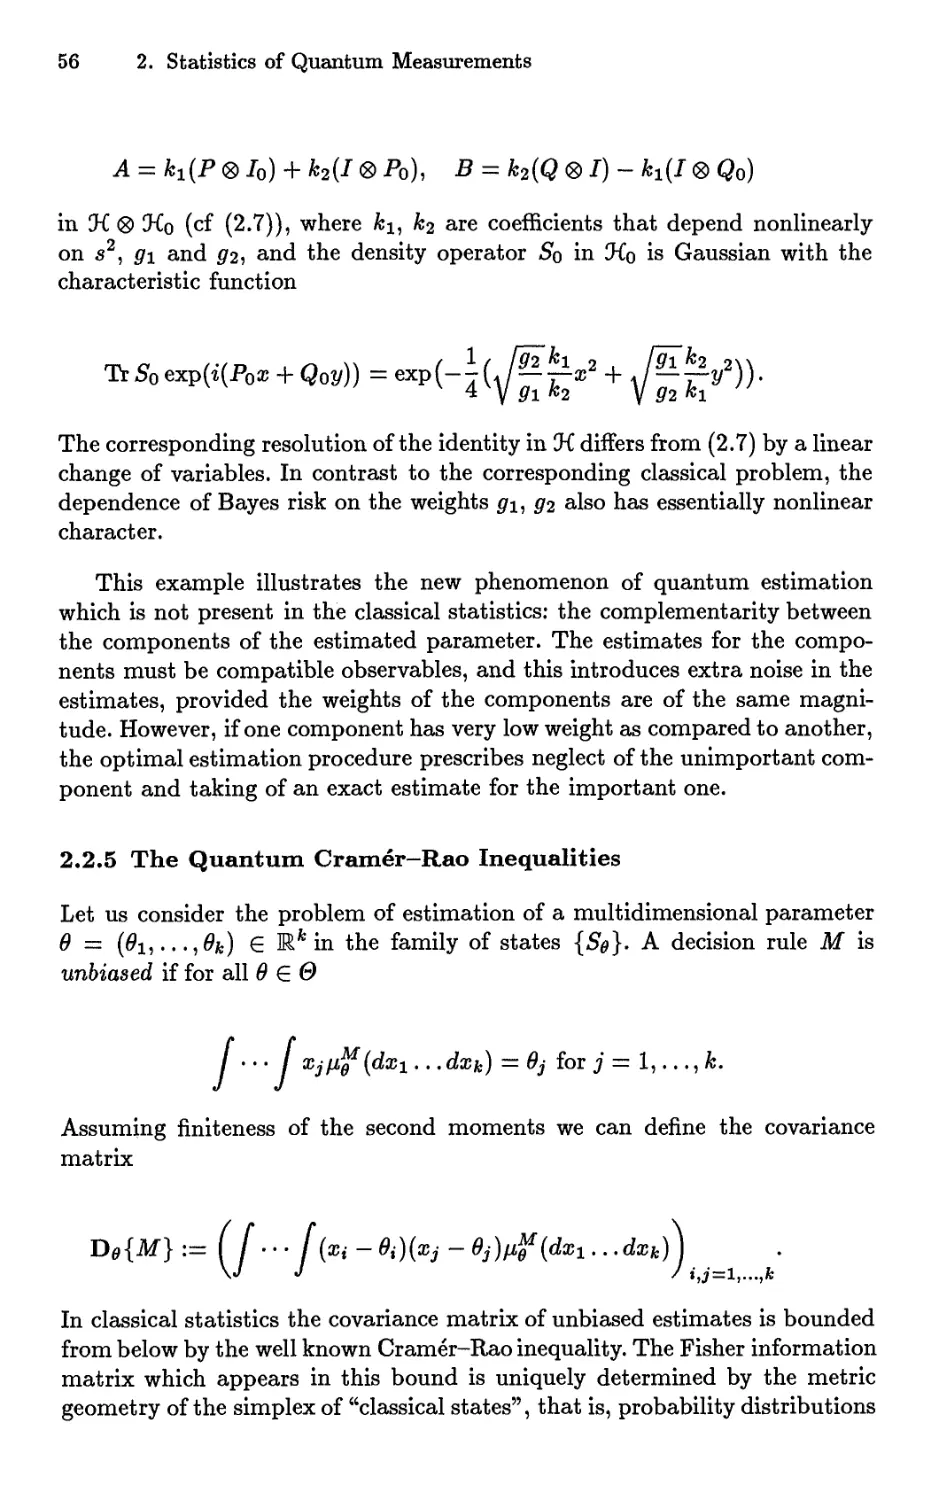 2.2.5 The Quantum Cramér-Rao Inequalities